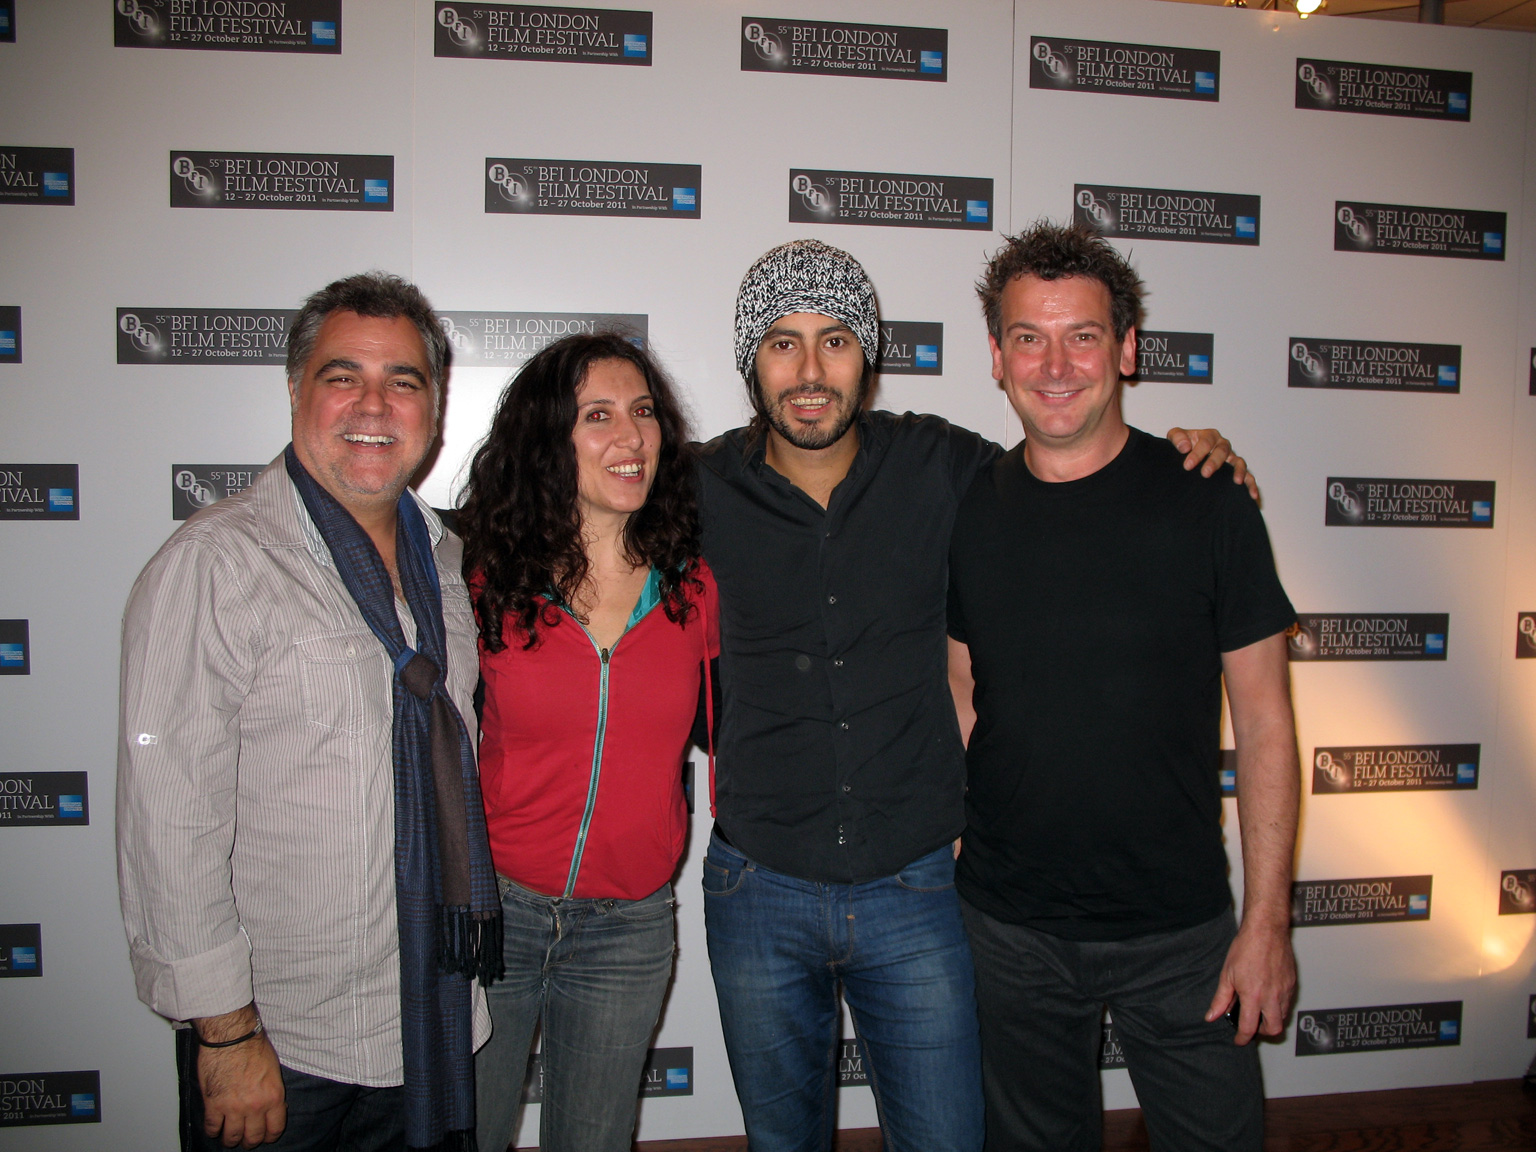 Tony Allen with Virginia Romero, Benito Zambrano and Ram Khatabakhsh and the 2011 London Film Festival